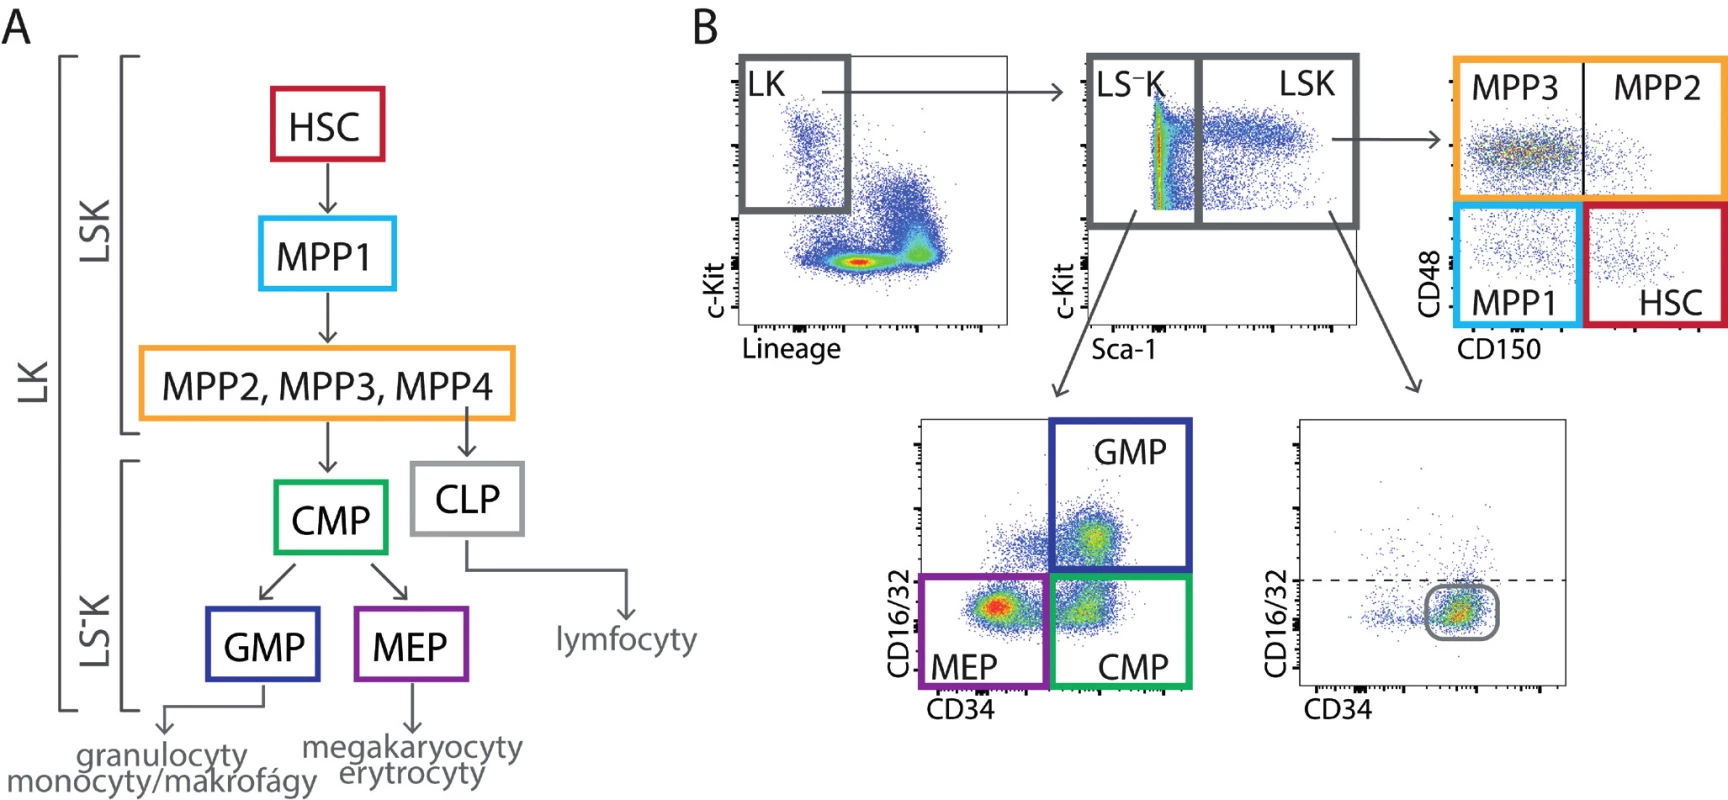 (A) Kmenové buňky (HSC), multipotentní progenitory (MPP) a myeloidní progenitory (CMP, GMP a MEP) tvoří vývojovou hierarchii
stále více diferencovaných buněk se stále menším spektrem krevních buněk, kterým mohou dát vzniknout. (B) Nezralé buňky v kostní dřeni
myší nemají liniové znaky (L) a exprimují receptor c-Kit (K; LK buňky). Dělí se na méně zralé buňky LSK a zralejší buňky LS–
K pomocí znaku
Sca-1 (Stem cell antigen-1). Buňky LSK lze rozlišit pomocí znaků CD150, CD48 a CD135 na buňky kmenové (HSC) a čtyři druhy multipotentních
progenitorů (MPP1, MPP2, MPP3 a MPP4). MPP4 mají výrazně lymfoidní vývojový potenciál. Na obrázku není jejich určení pomocí znaku CD135
(Flt3) ukázáno. Rozdělení LSK buněk podle znaků CD34 a CD16/32 není běžně používáno, je zde jen uvedeno pro porovnání s buňkami LS–
K.
Buňky LS–
K obsahují progenitory myeloidních buněk, které lze rozlišit pomocí znaků CD34 a CD16/32 na CMP – společný (common) progenitor
myeloidních buněk, GMP – progenitor granulocytů a makrofágu a MEP – progenitor megakaryocytů a erytroidních buněk. Buňky LSK mají
v normální tkáni CD34/CD16-32 fenotyp stejný jako buňky CMP.